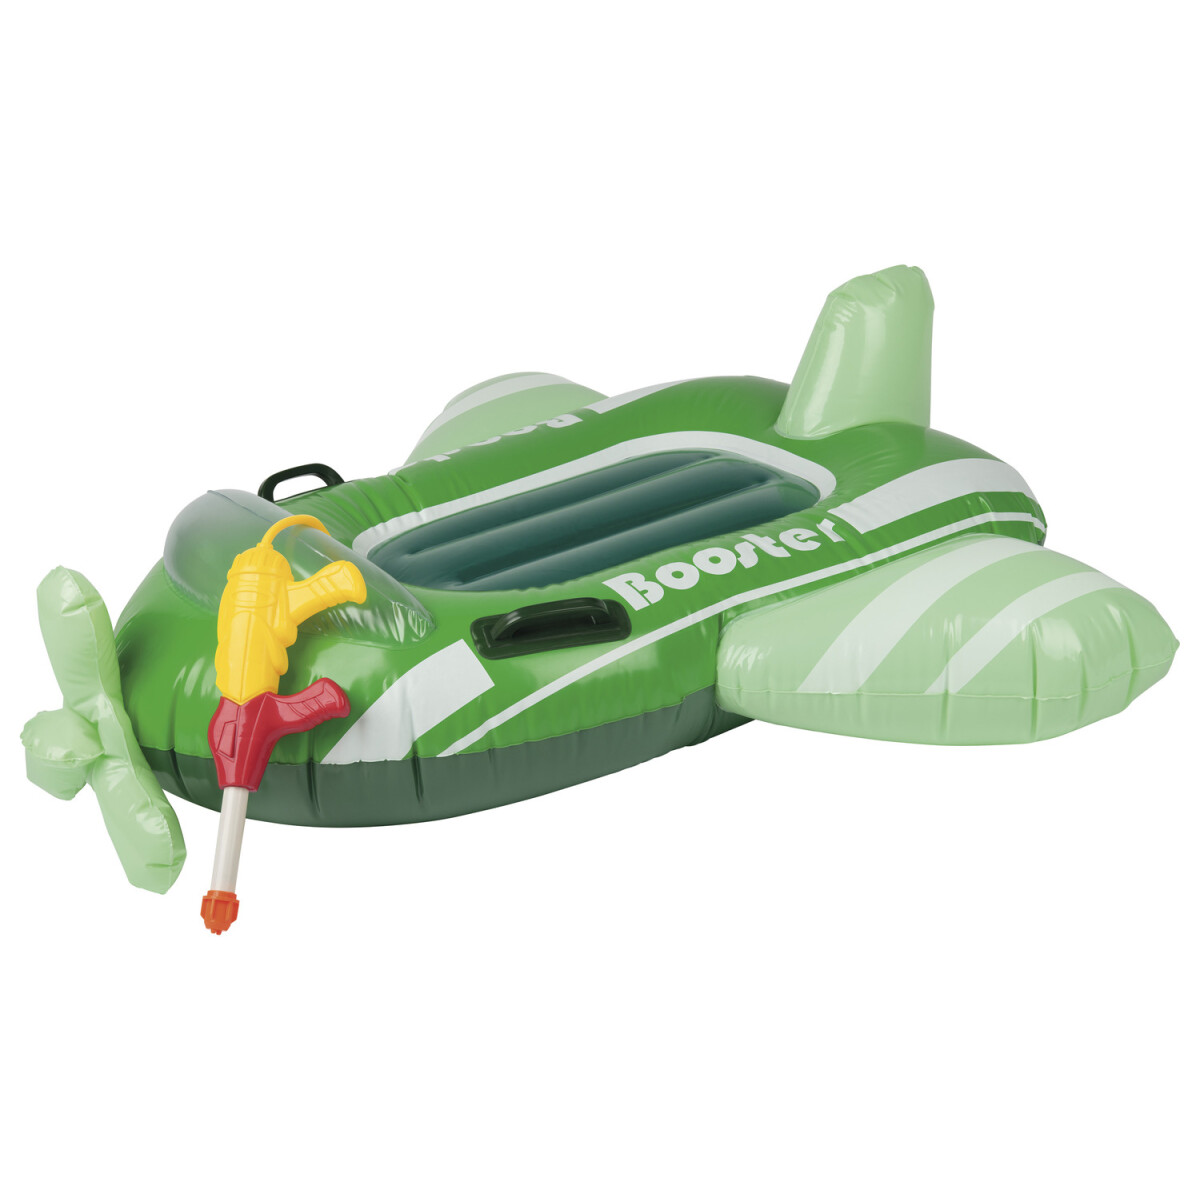 Sitzboote, Kinder Playtive € (Flugzeug) neuwertig, B-Ware - mit Wasserspritzpistole 12,99 aufblasbar,